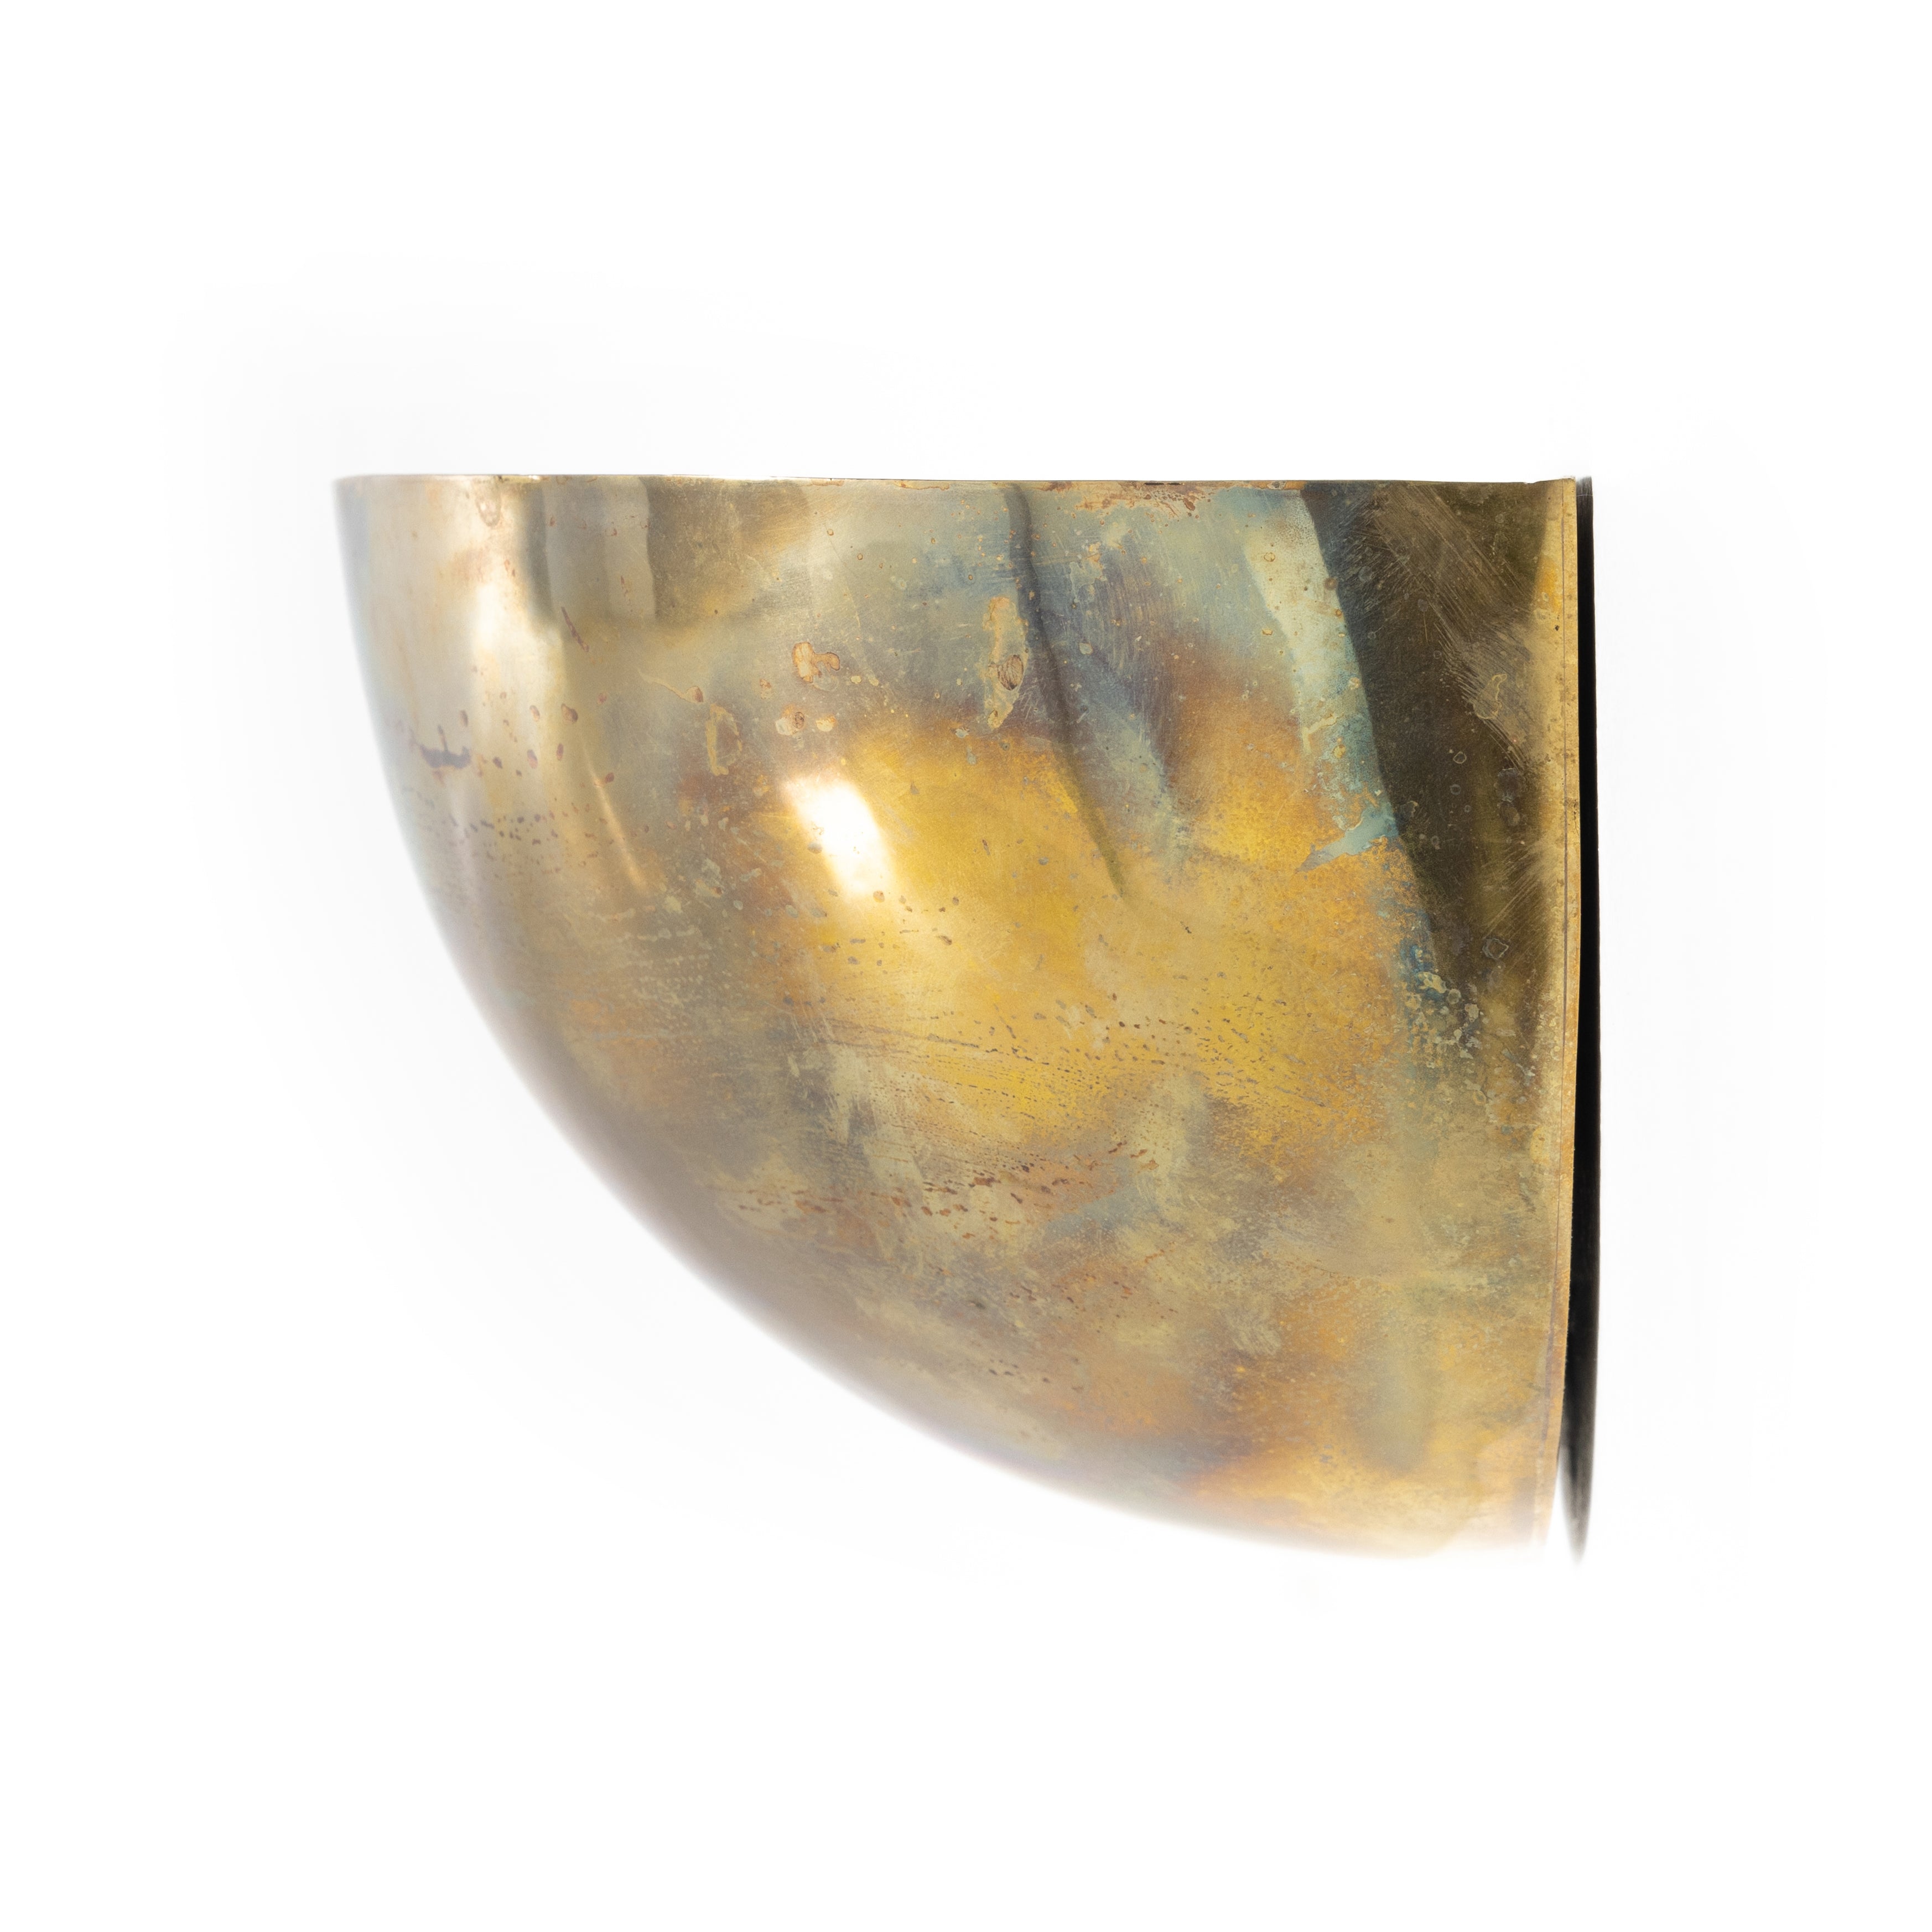 Palm Sconce - Burnt Brass